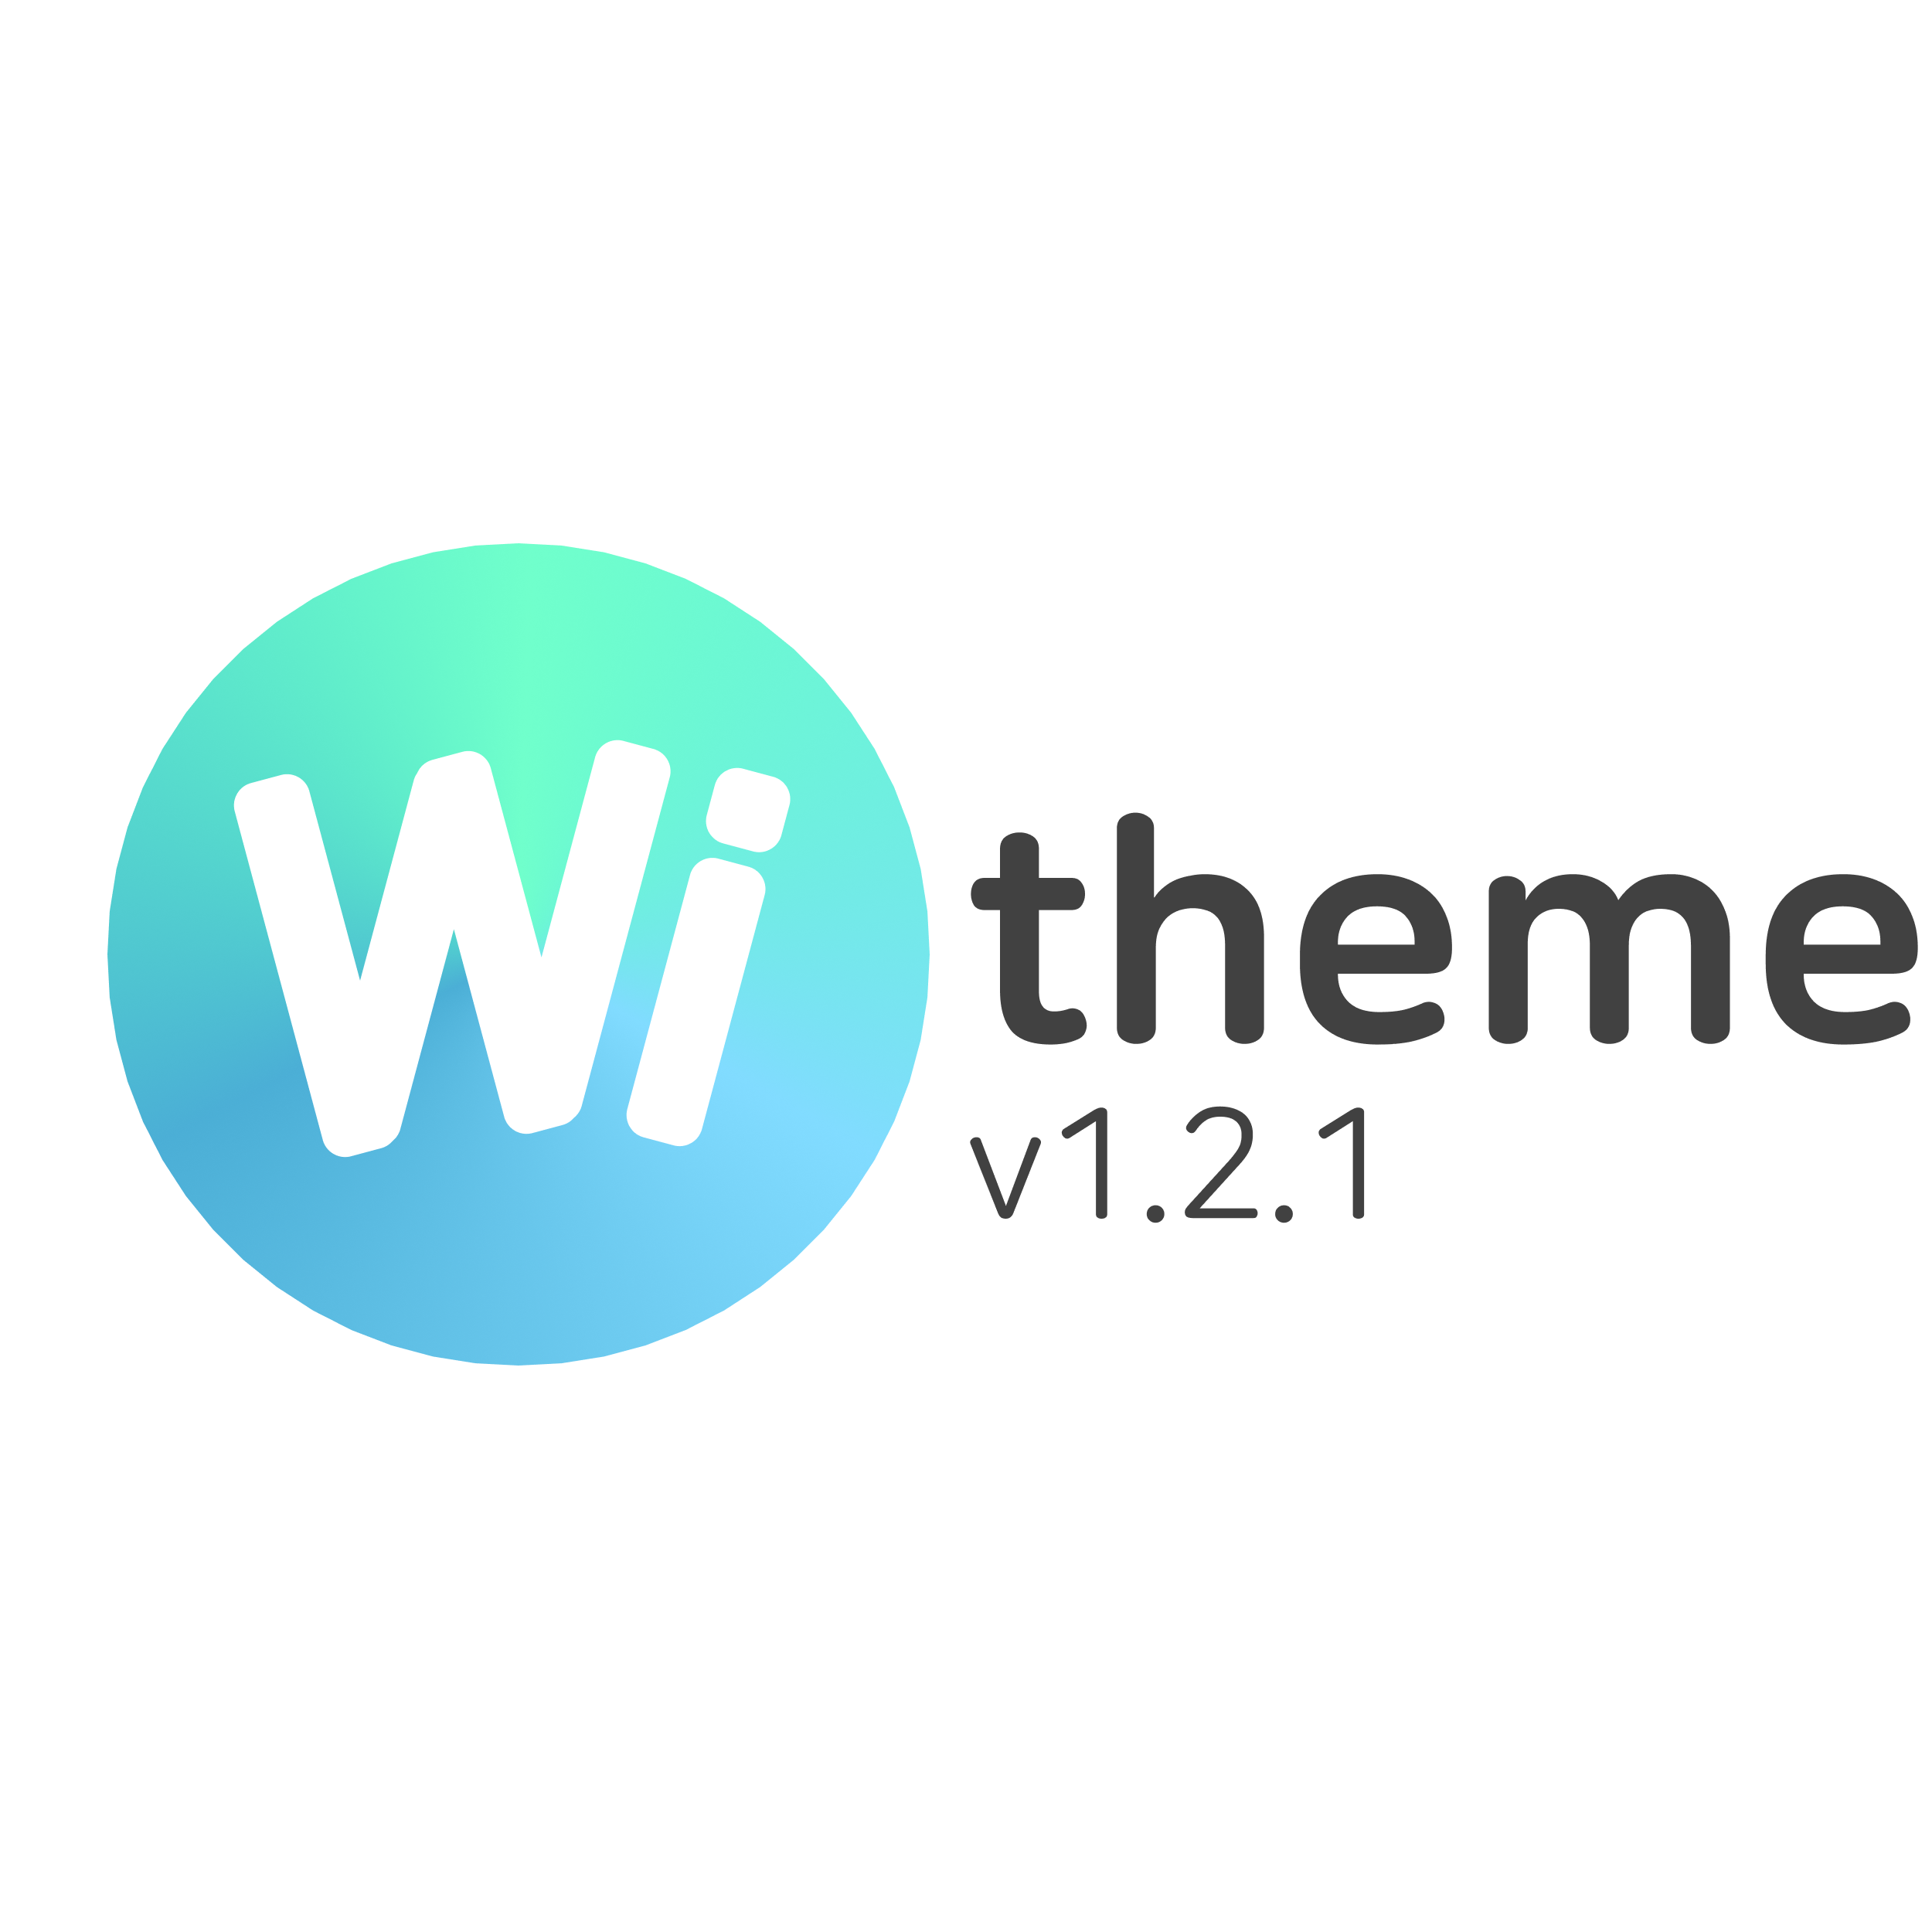 Wi theme 1.2.1 업데이트 사항 9